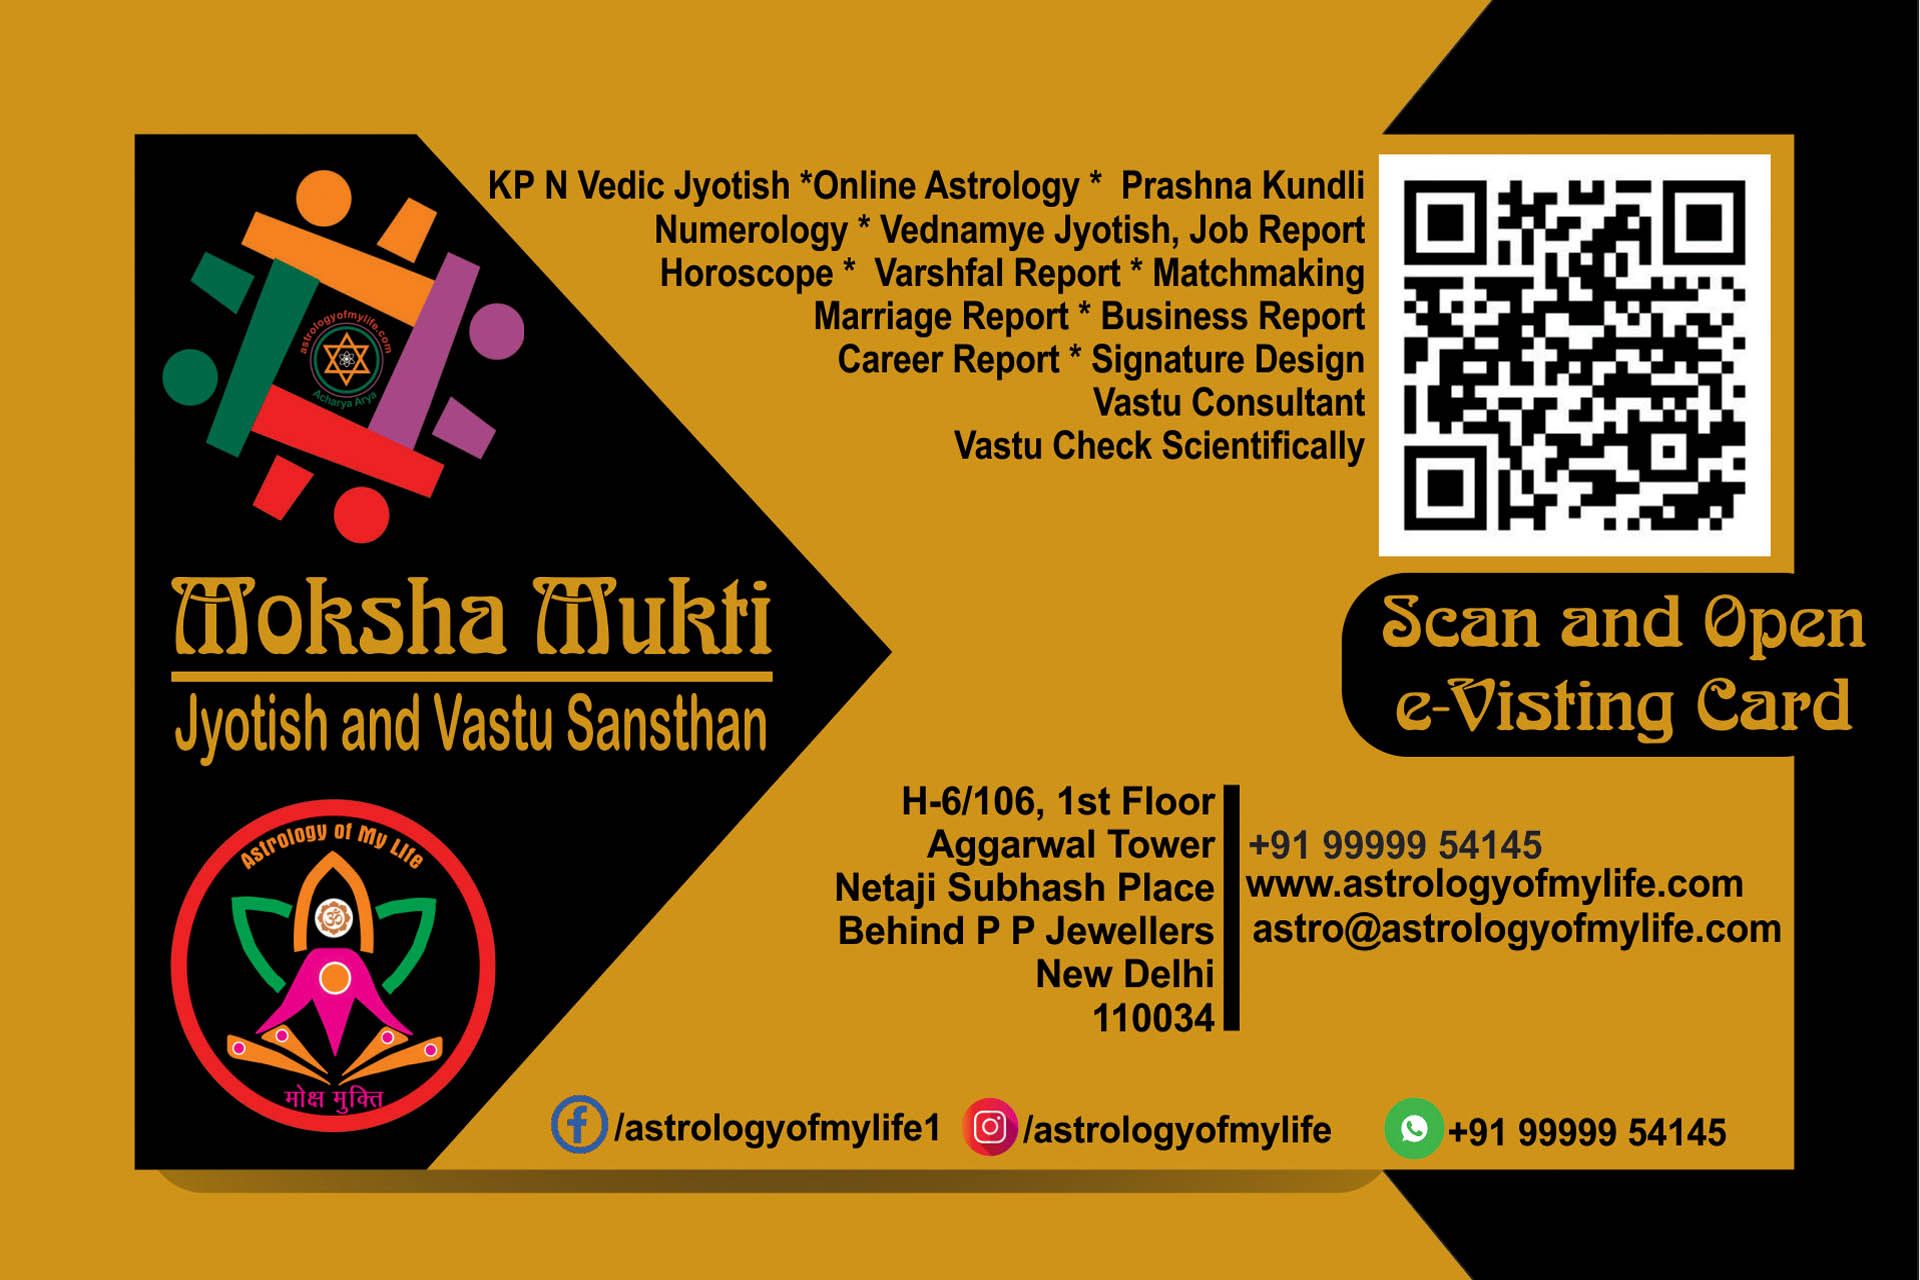 e-visiting card - Moksha Mukti Jyotish and Vastu Sansthan Delhi India